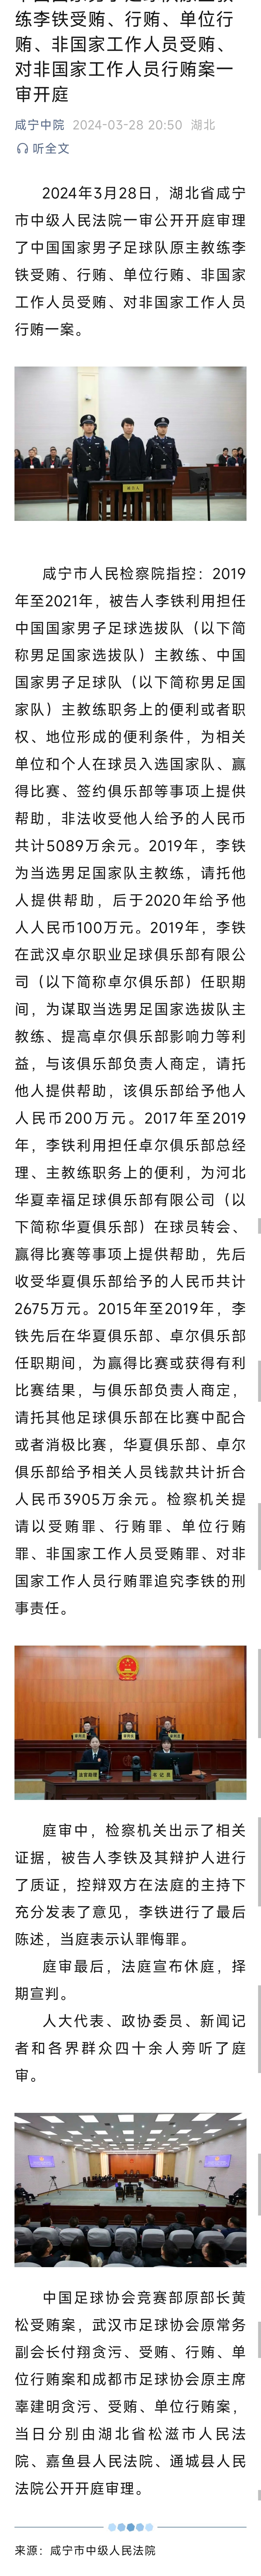 择期宣判中国国家男子足球队原主教练李铁案一审开庭